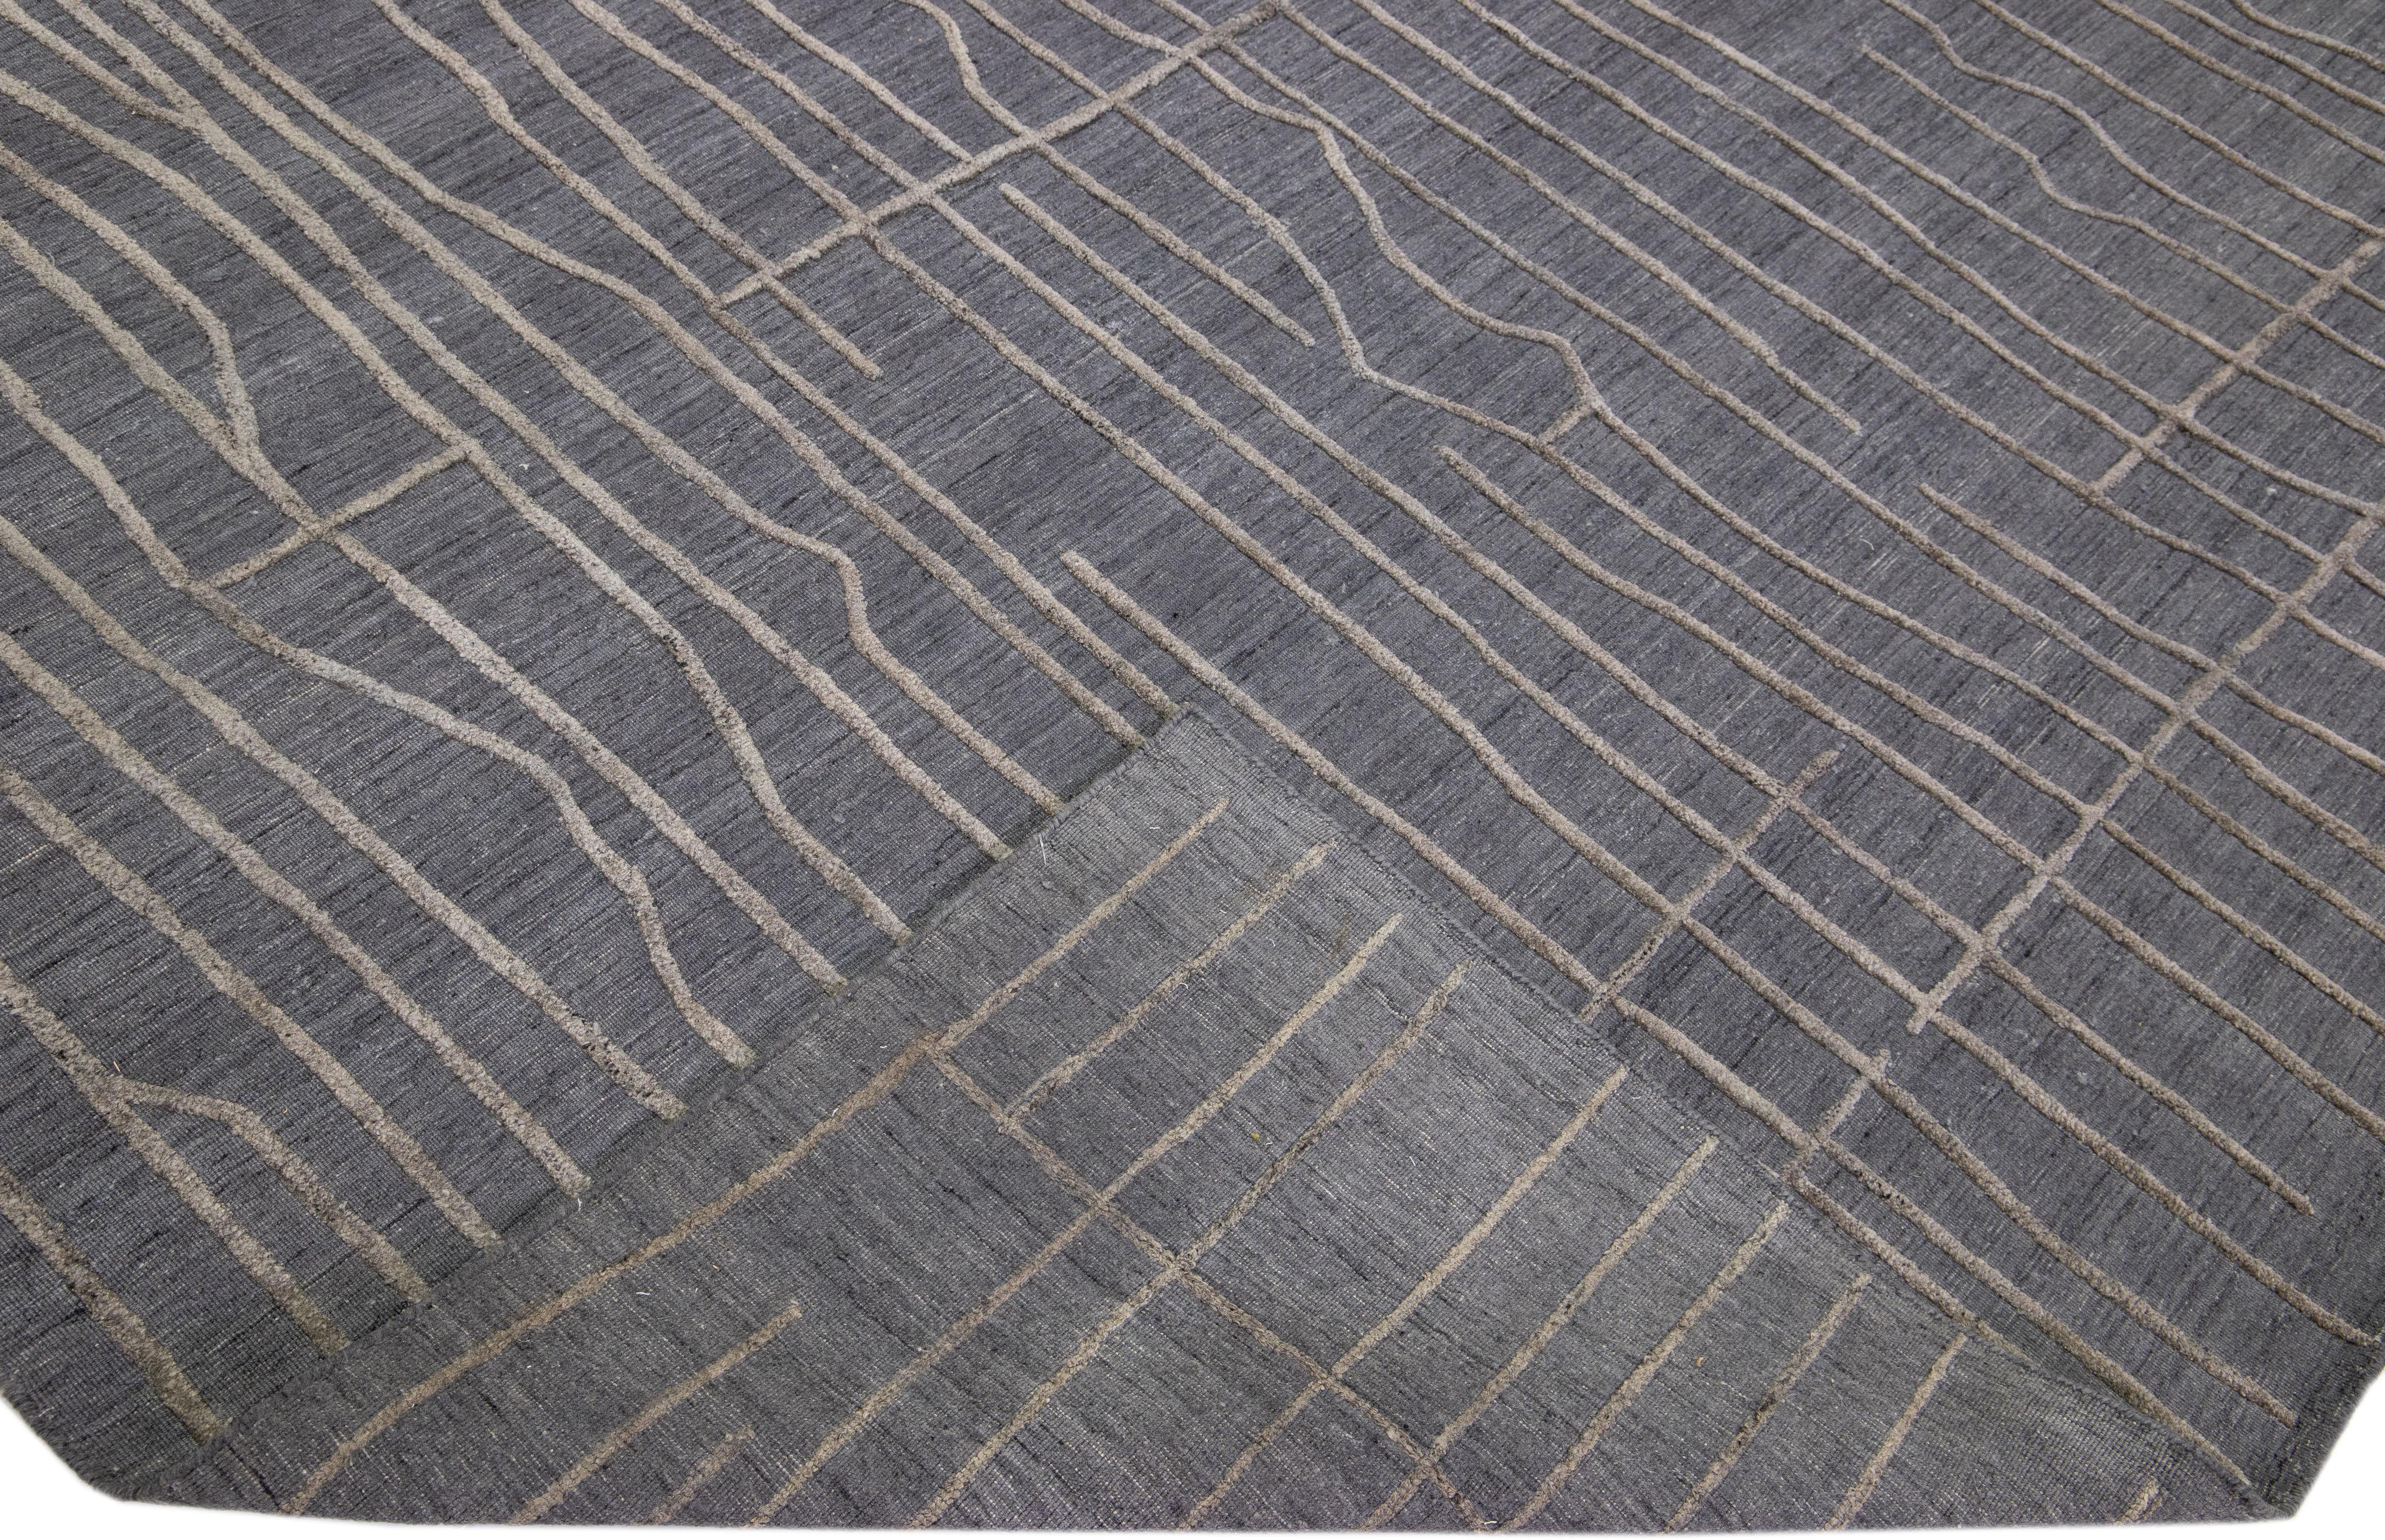 Schöne zeitgenössische Teppiche von Thom Filicia Home Collection. Dieser indische handgewebte Teppich aus Wolle und Viskose hat ein anthrazitfarbenes Feld und graue Akzente im gesamten Design. 
Thom Filicias Auge für exquisite Details und schöne